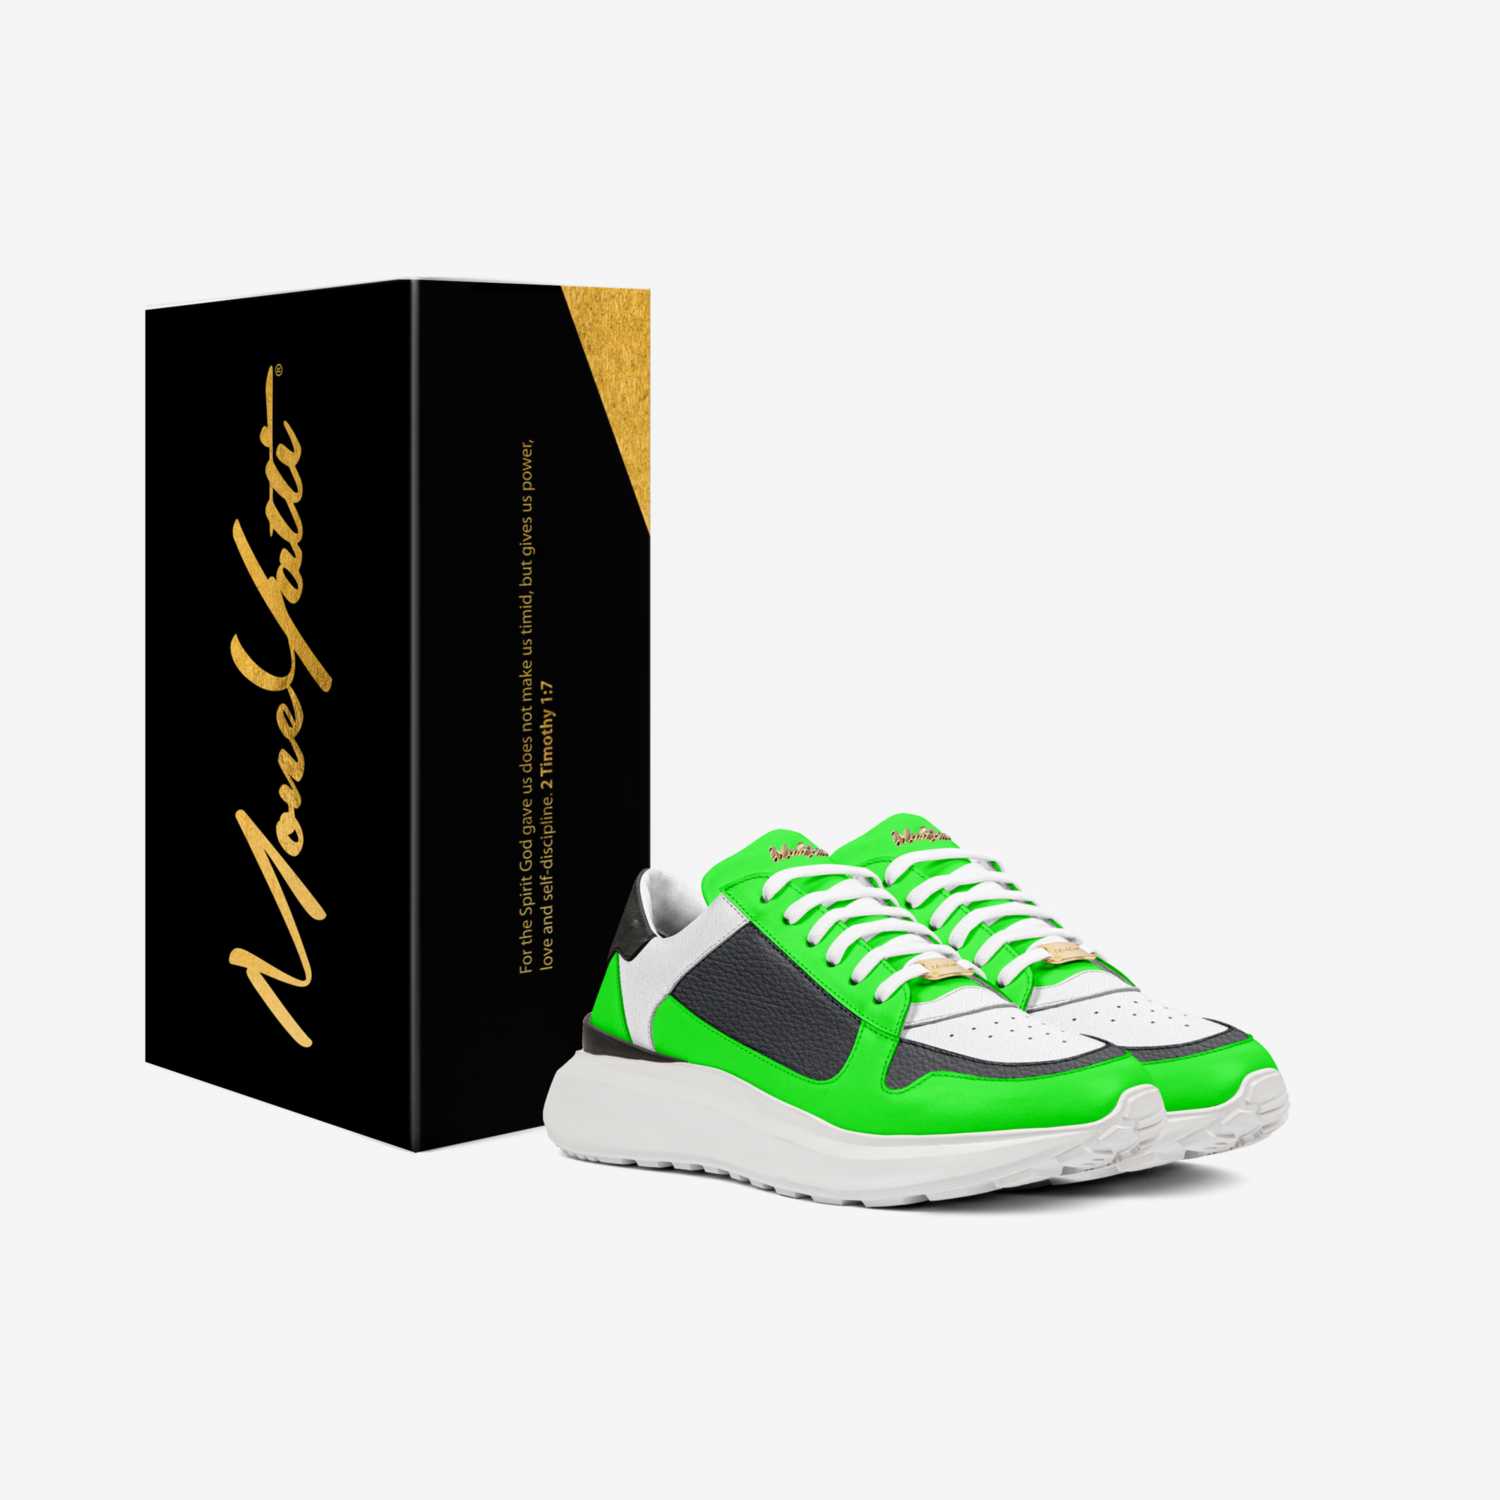 MONEYATTI CI025 custom made in Italy shoes by Moneyatti Brand | Box view